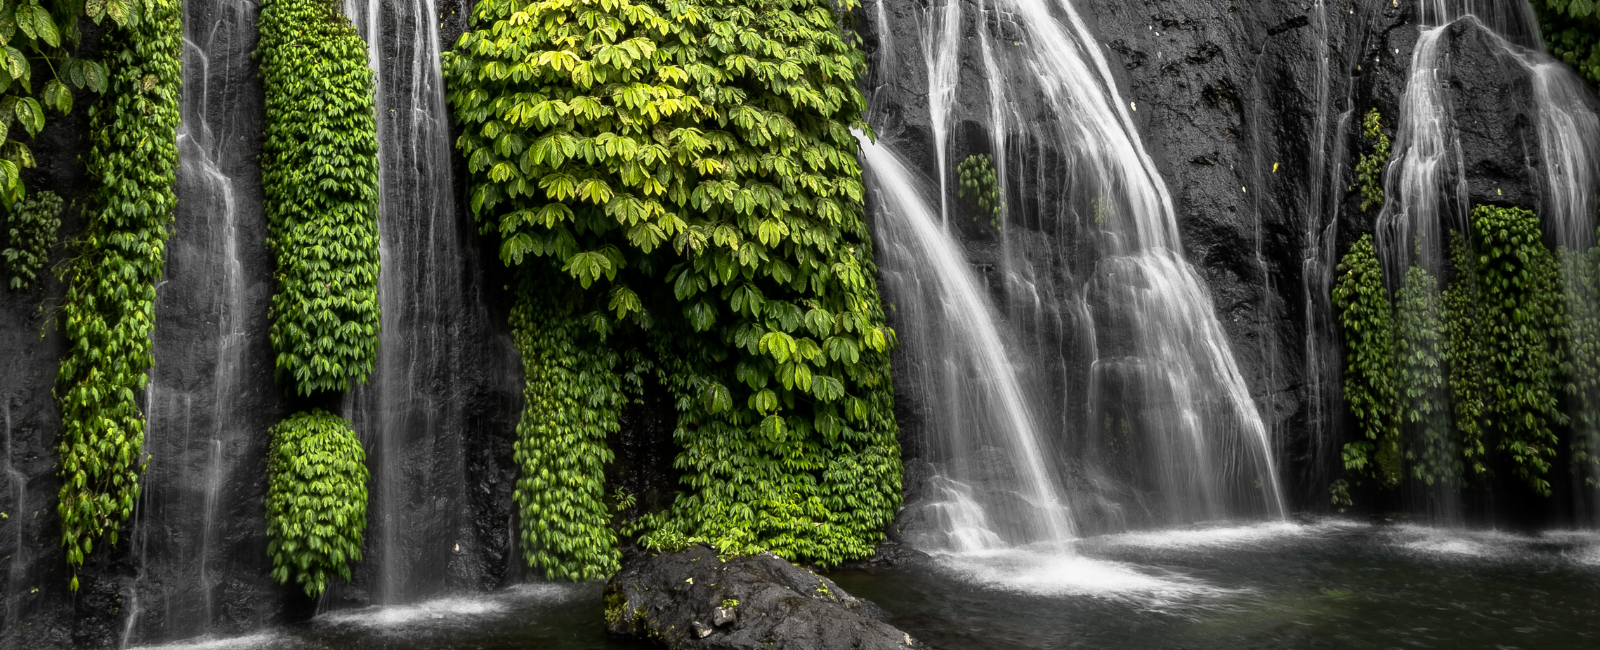 Banyumala Twin Waterfalls, Munduk, North Bali